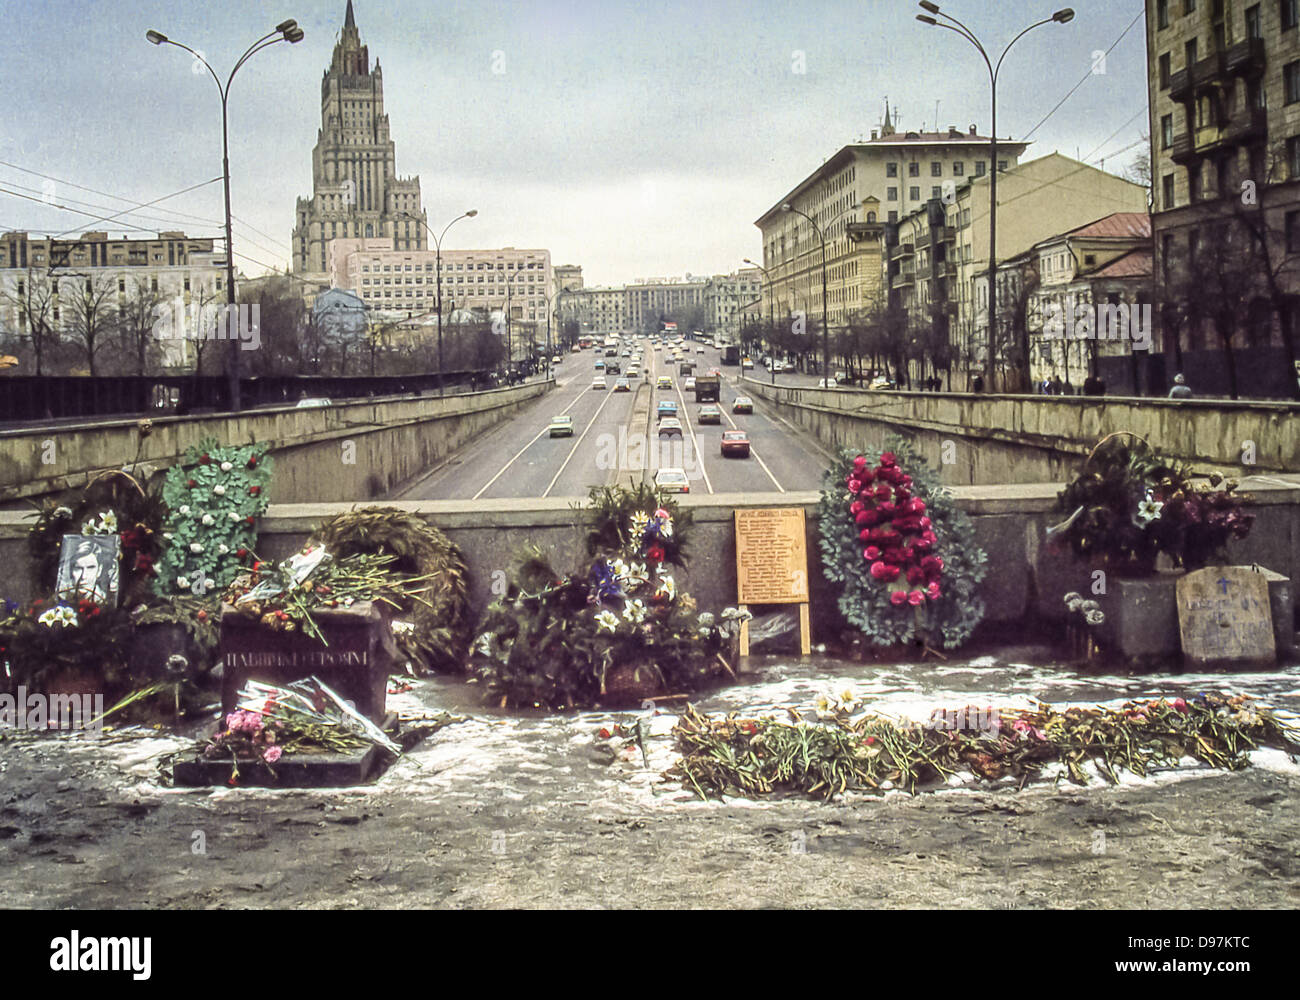 El 1 de noviembre, 1991 - Moscú, RU - un improvisado memorial de marchitas coronas y ramos de flores en la cima del viaducto, donde tres hombres fueron muertos en la lucha contra el intento de golpe de estado por parte de los comunistas de línea dura de deponer a Gorbachov en agosto de 1991. Esta fotografía tomada el 1 de noviembre de 1991, acerca de 21/2 meses después del fracaso del golpe de estado que llevó finalmente a la disolución de la Unión Soviética en diciembre de 1991. El edificio en el fondo es el Ministerio de Relaciones Exteriores, una de las siete hermanas de Moscú, siete rascacielos diseñado en el estilo estalinista. Un monumento conmemorativo permanente más tarde fue erigida aquí. ( Foto de stock